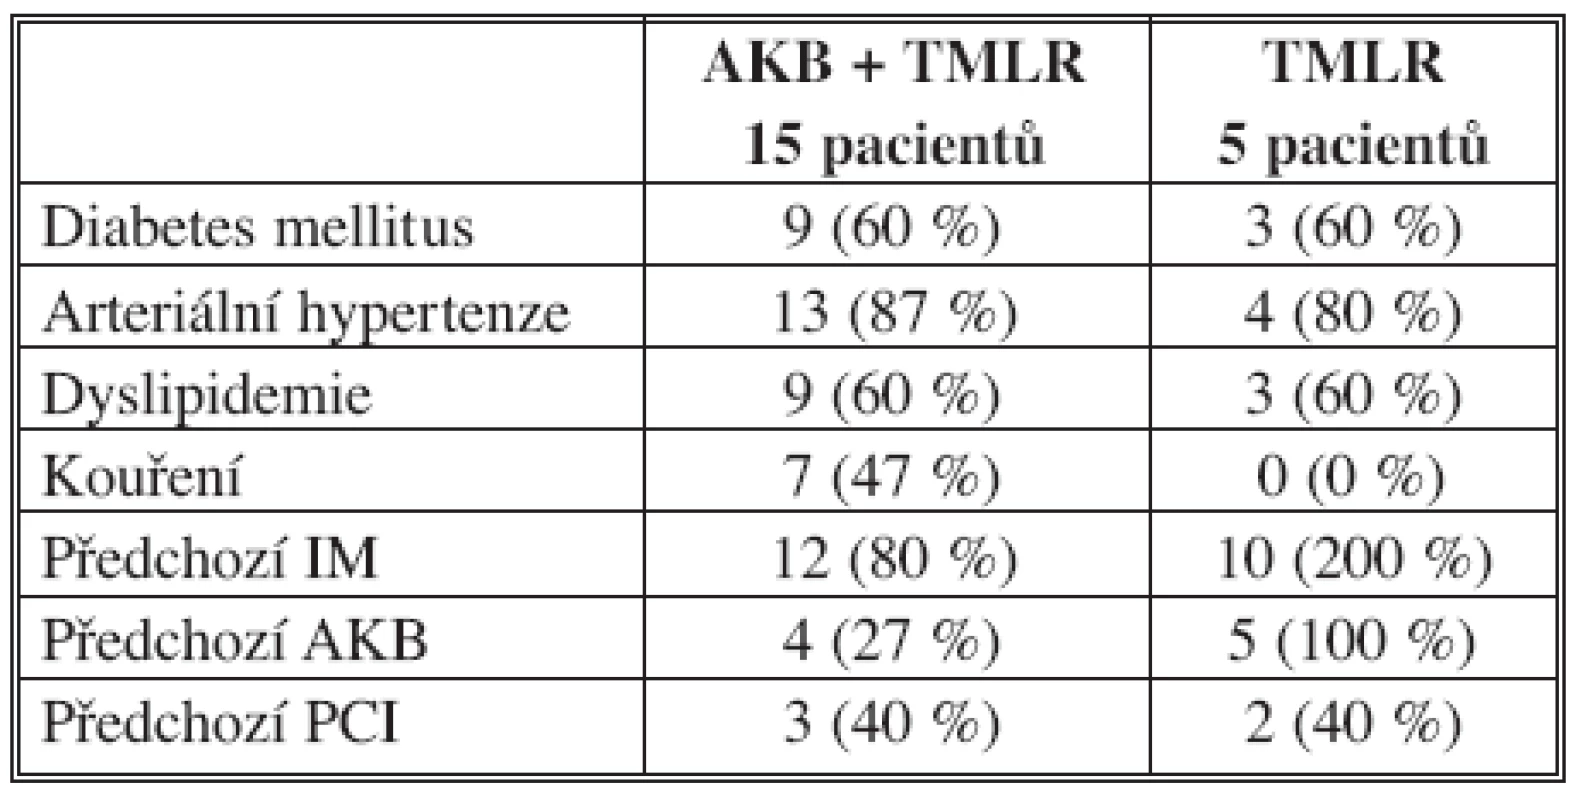 Rizikové faktory a předoperační charakteristika pacientů
Tab. 1. Risk factors and preoperative patient characteristics